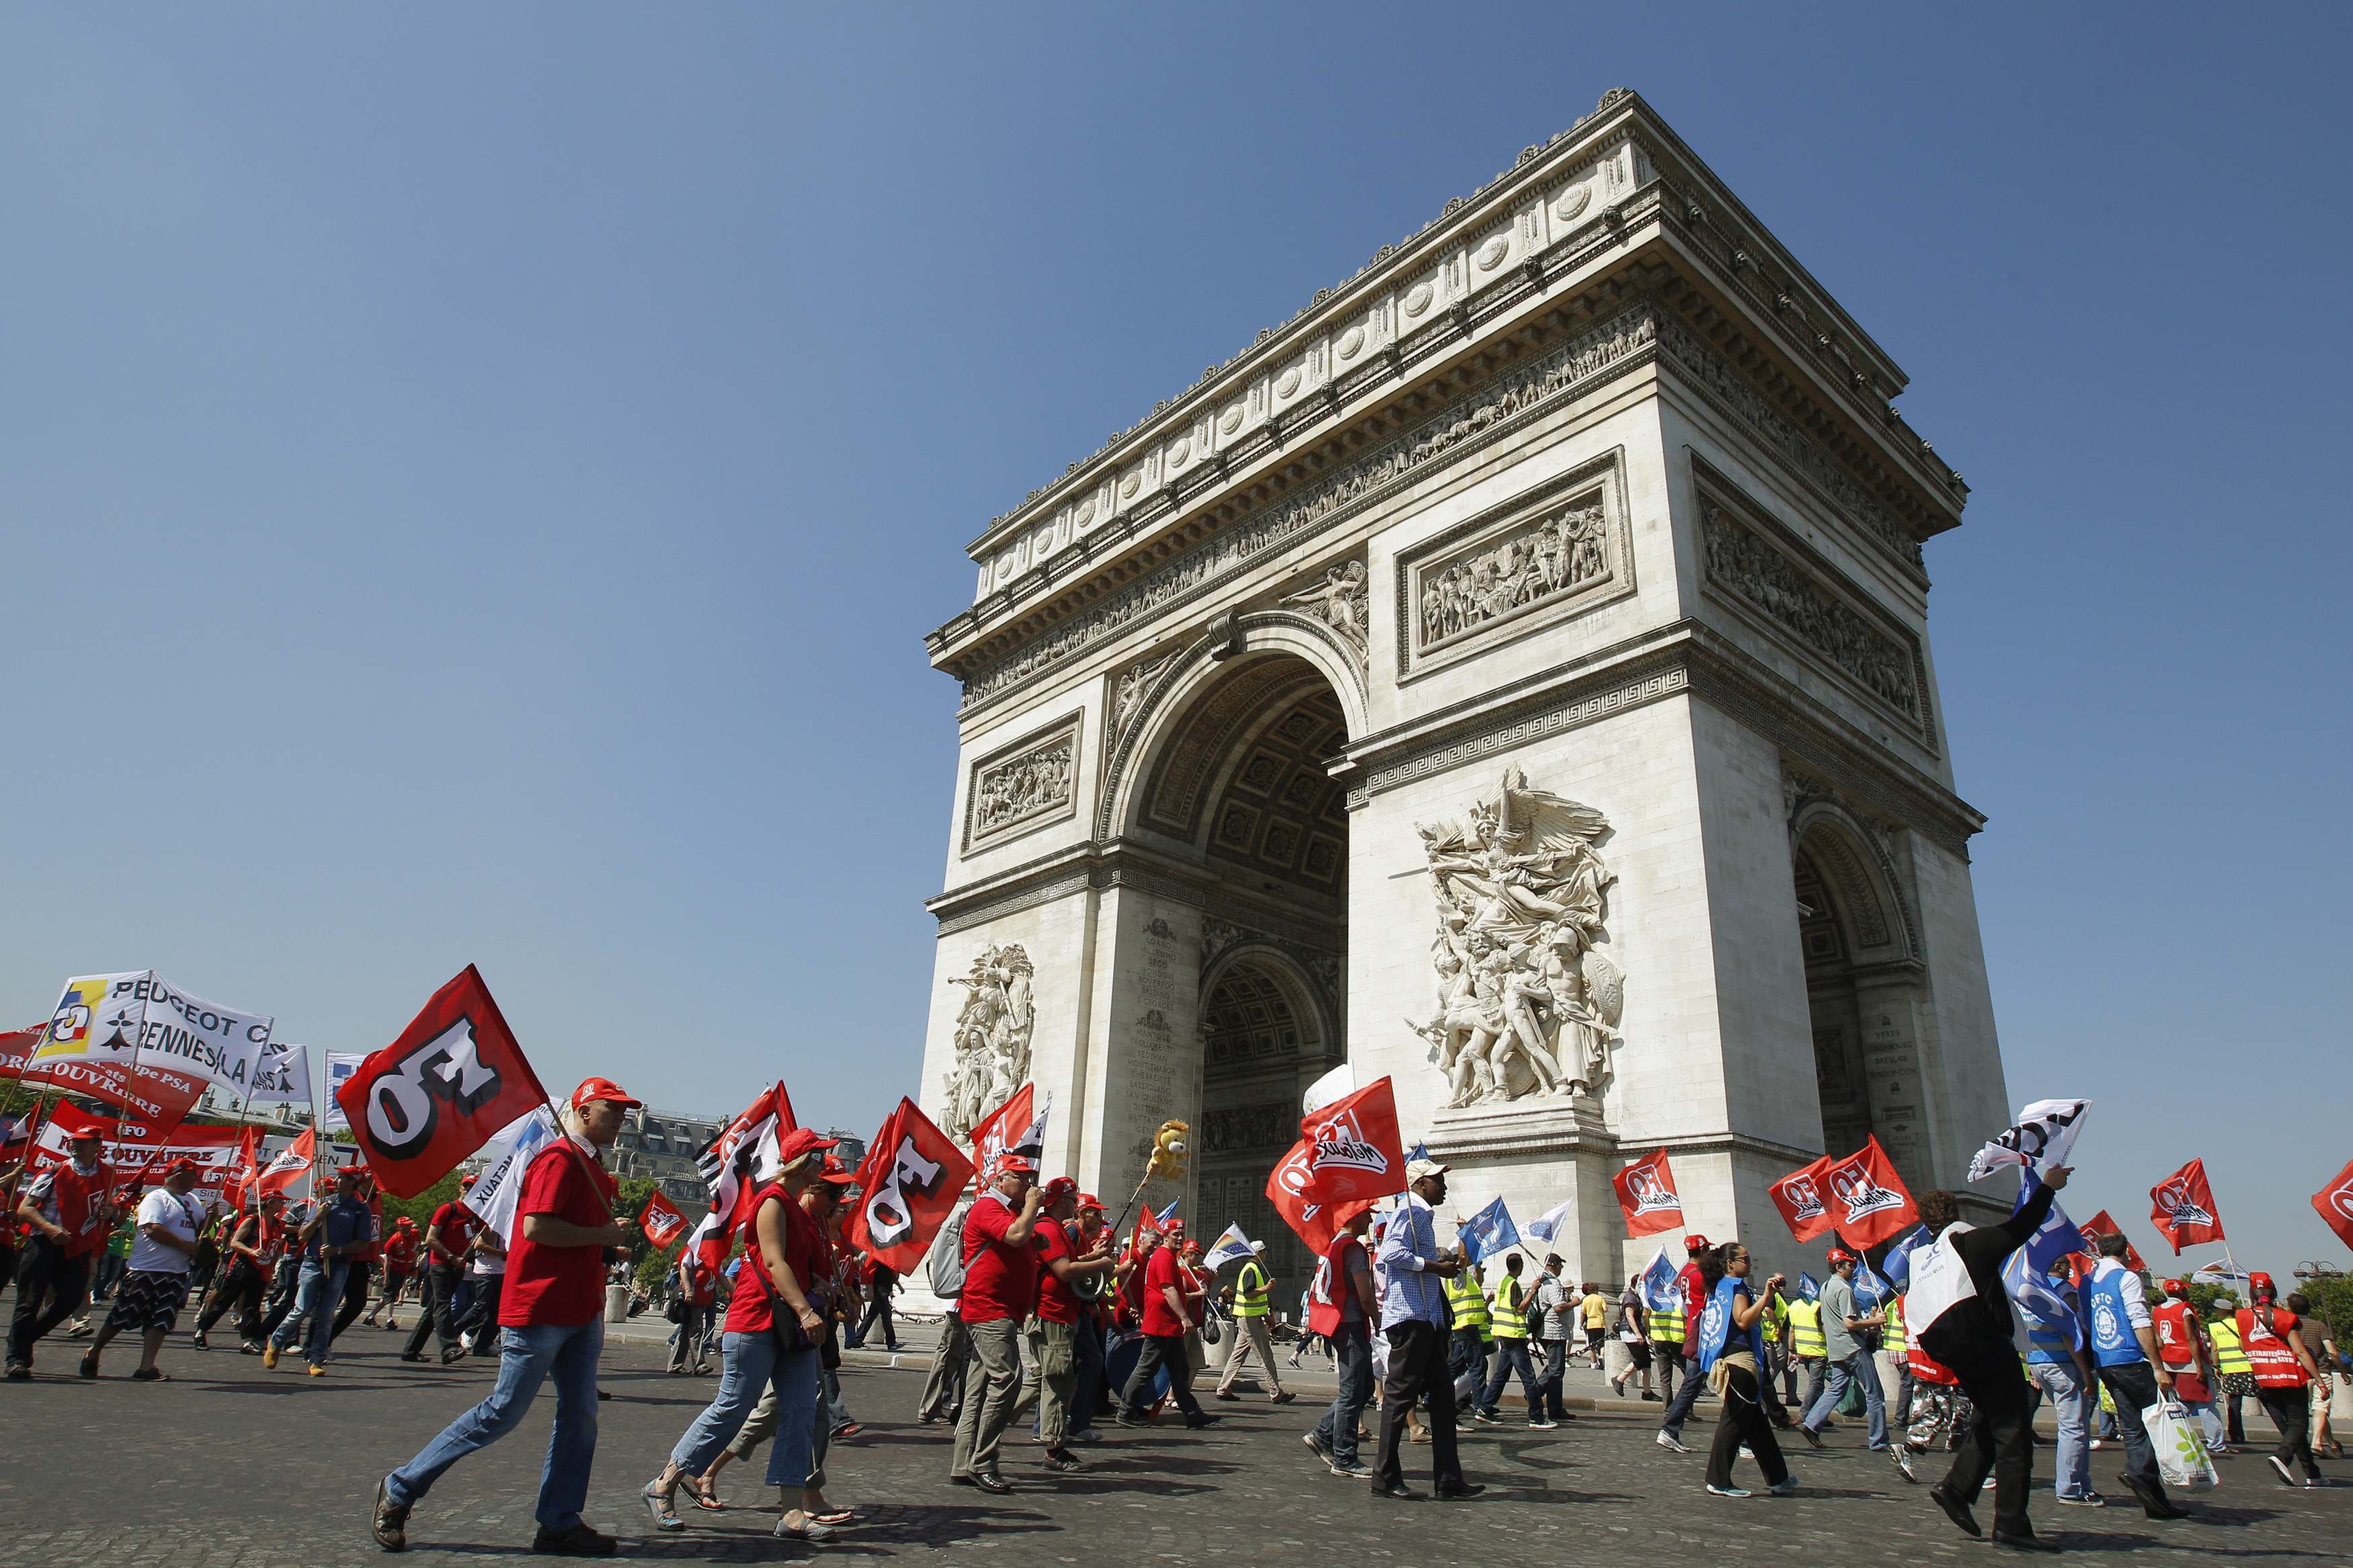 “Μπόνους” για οικολογικό αυτοκίνητο τάζει η γαλλική κυβέρνηση την ώρα που συνεχίζονται οι διαδηλώσεις – ΦΩΤΟ